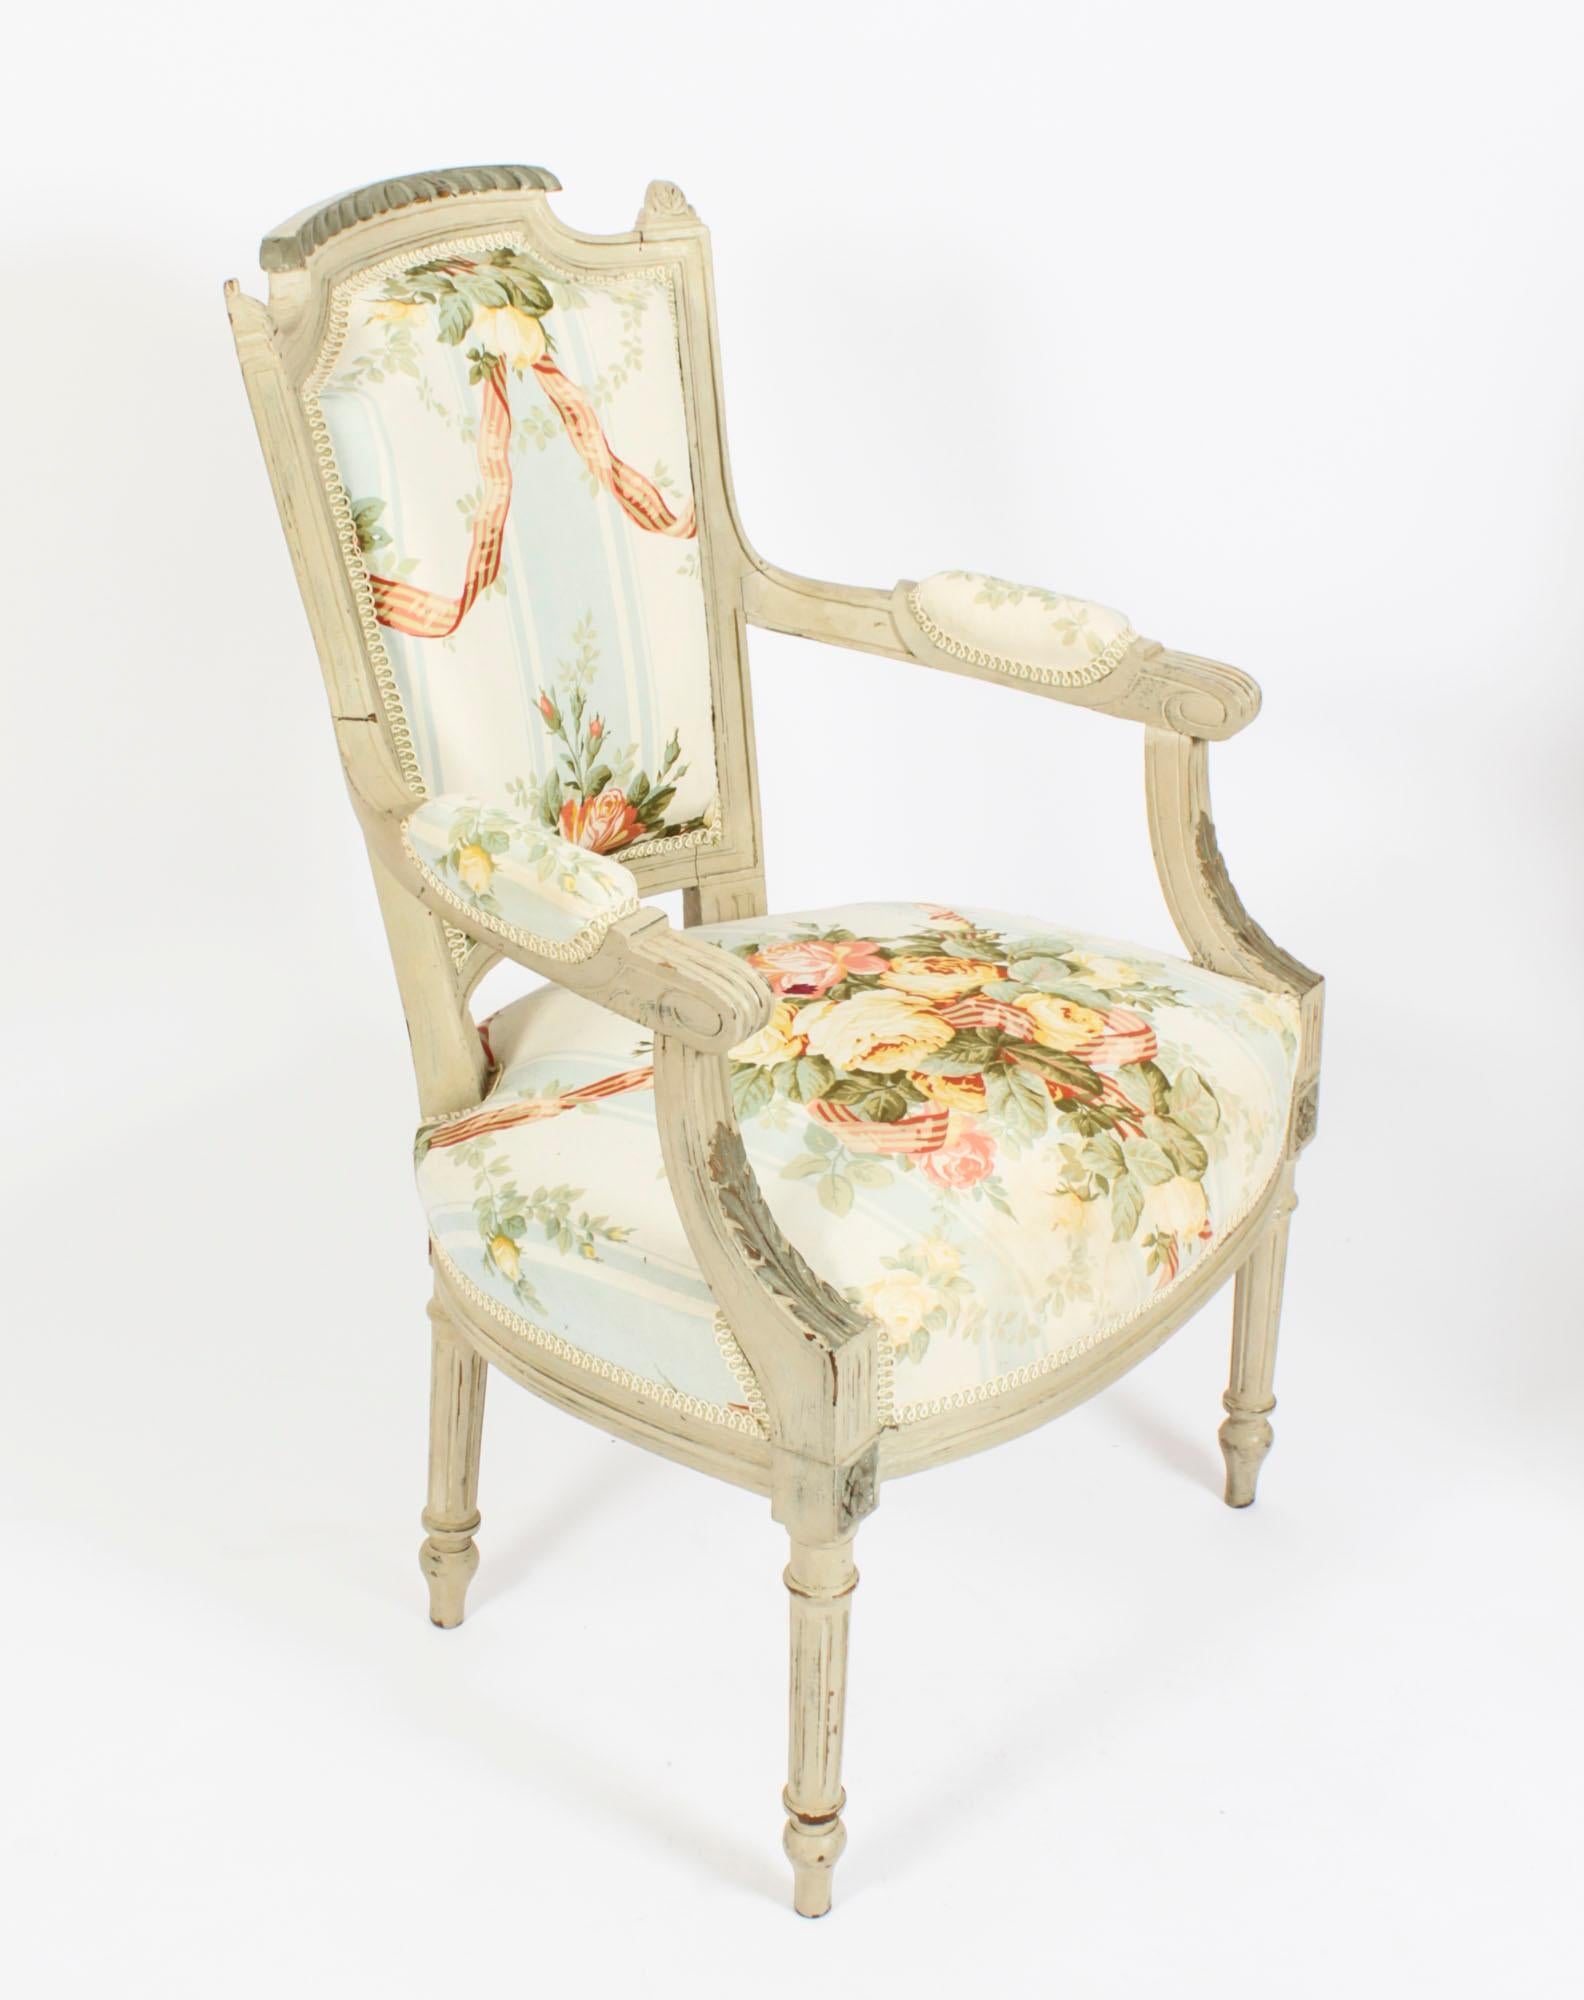 Dies ist ein elegantes antikes Paar von Louis XVI Revival gemalt fauteuil Sessel, ca. 1880 in Datum.
Konstruiert aus gut geschnitztem, zweifarbigem, grauem Buchenholz, mit späterer Polsterung im Blumen- und Swag-Design; auf gedrechselten und spitz